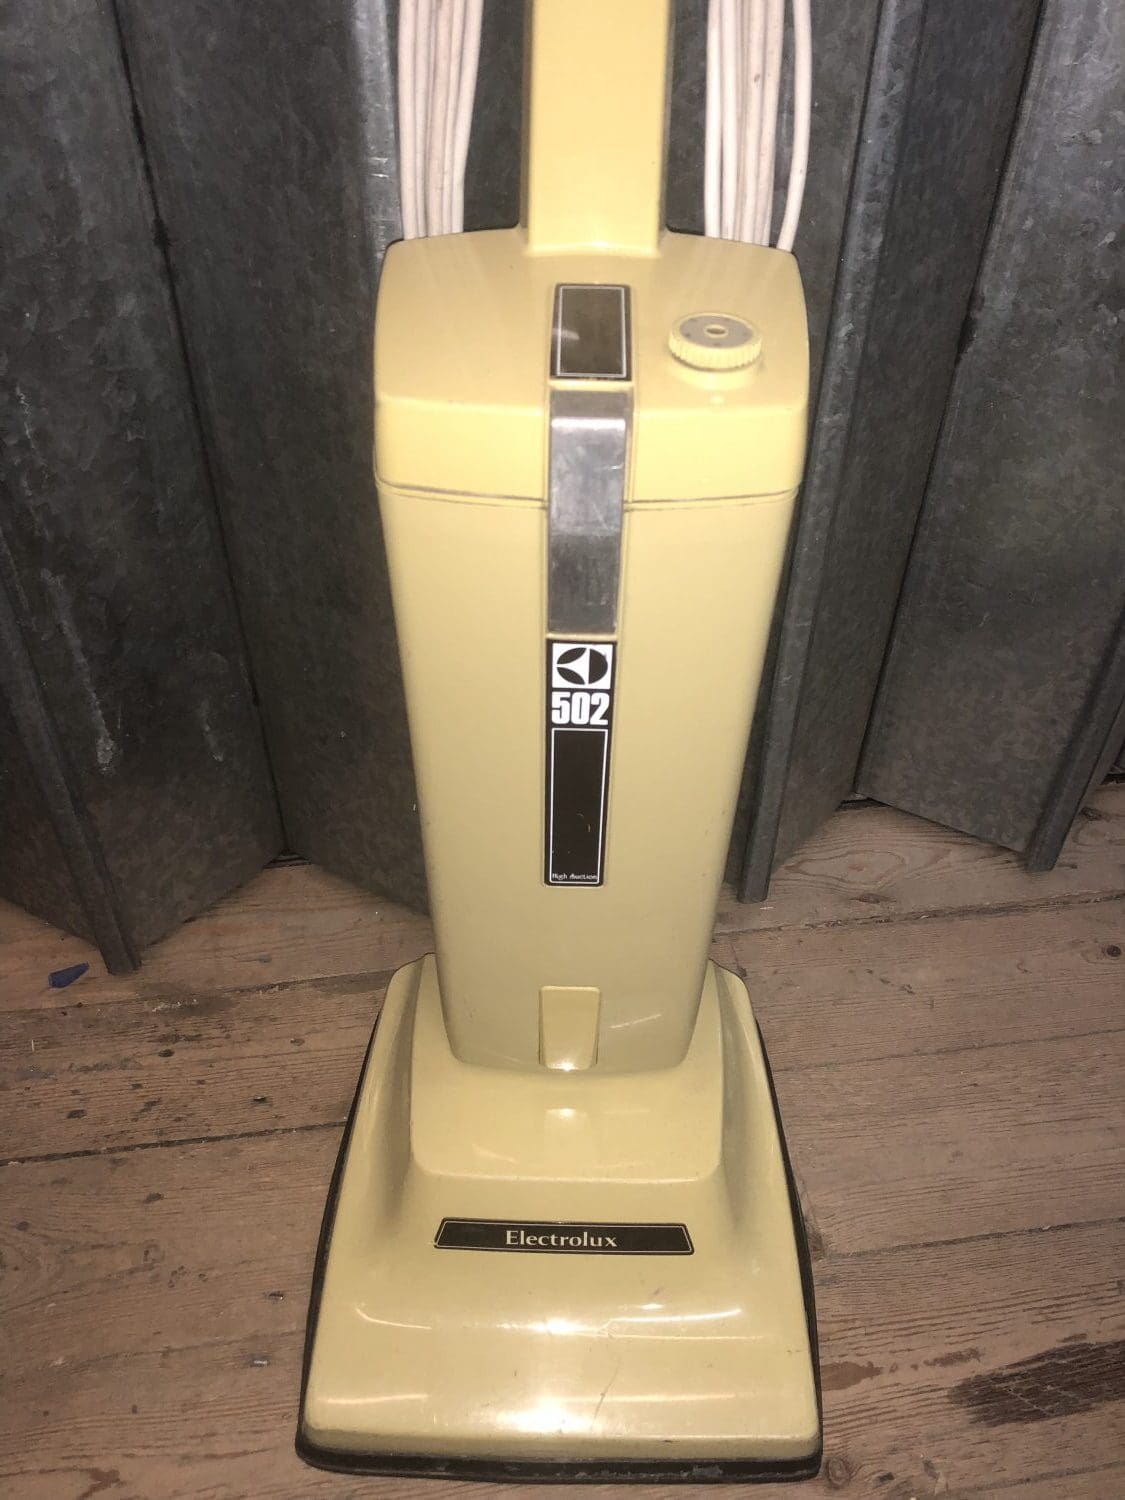 1980s vacuum cleaner